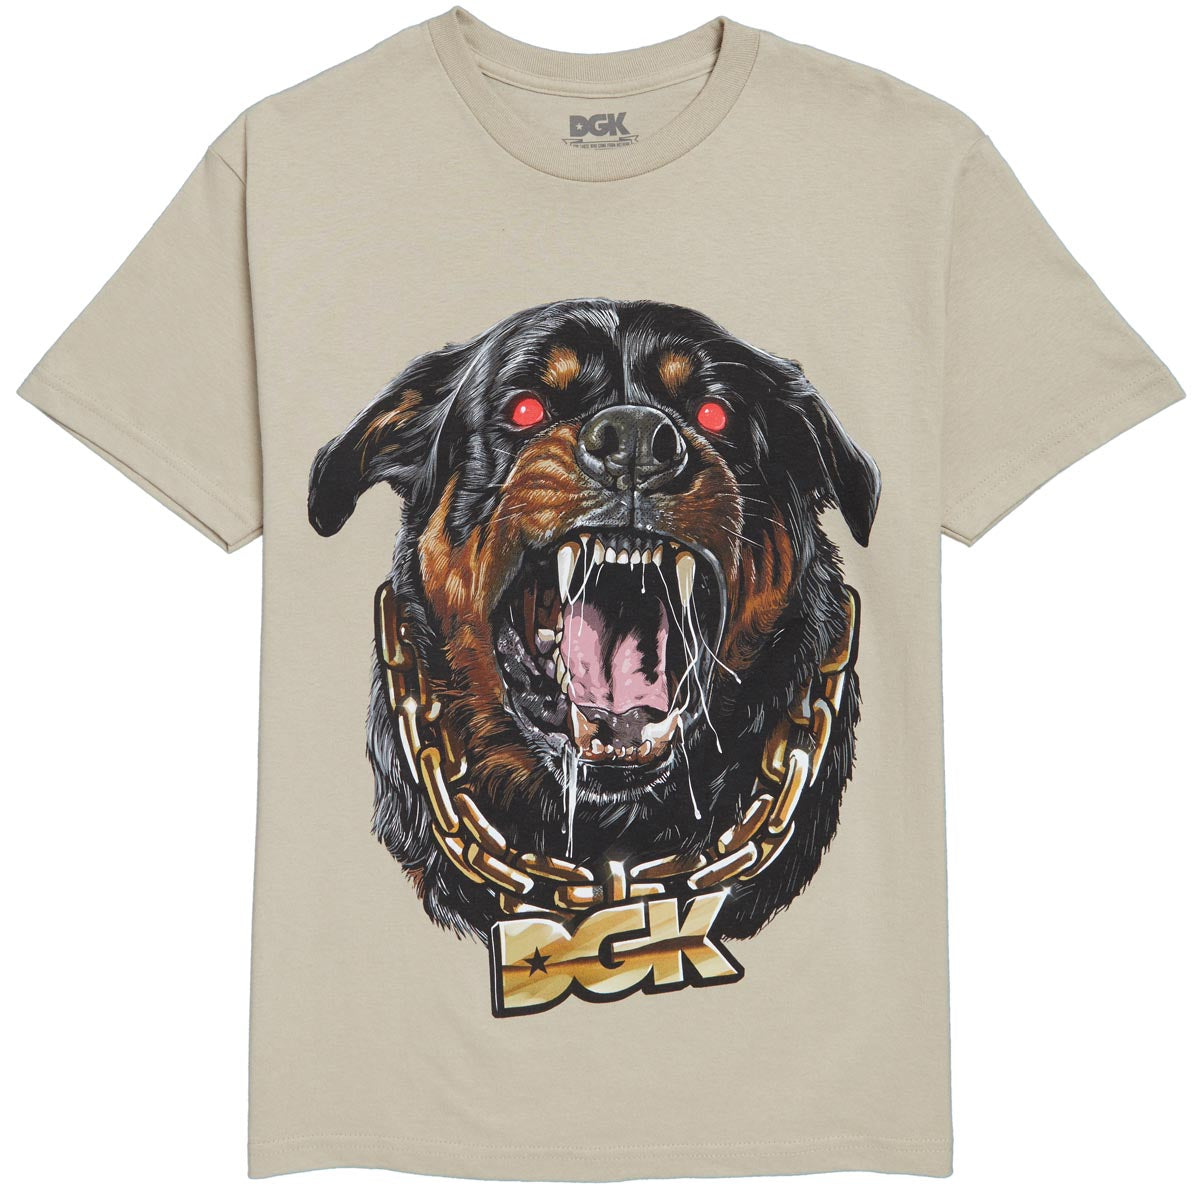 DGK Guard T-Shirt - Sand image 1